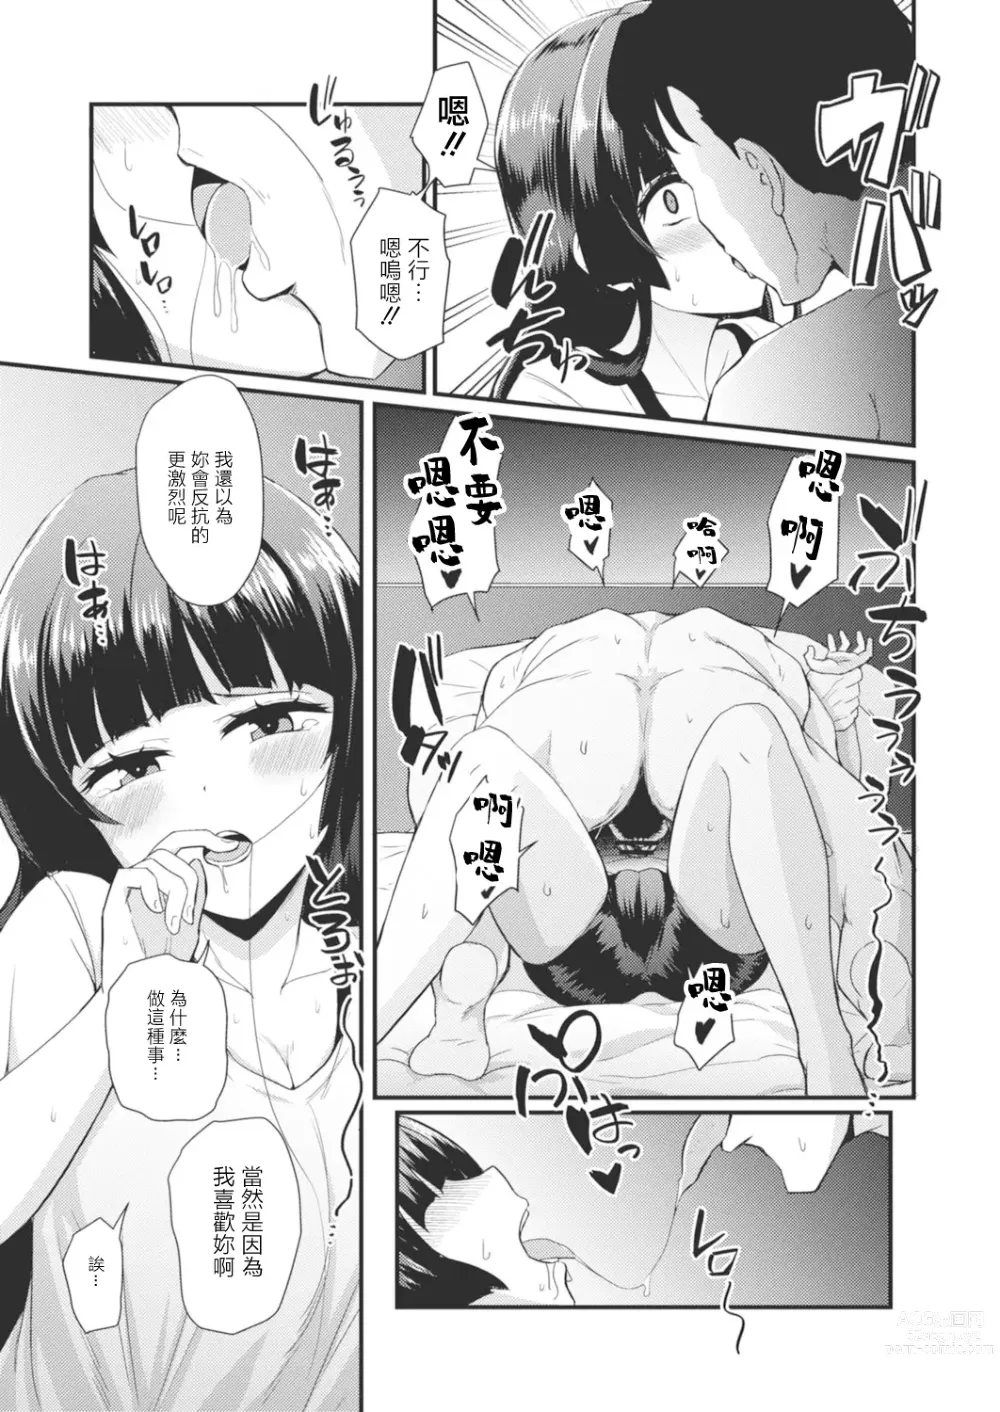 Page 9 of manga Gendai Shikiyoku Yotogibanashi Daiichiya Kaguya no Shokuzai